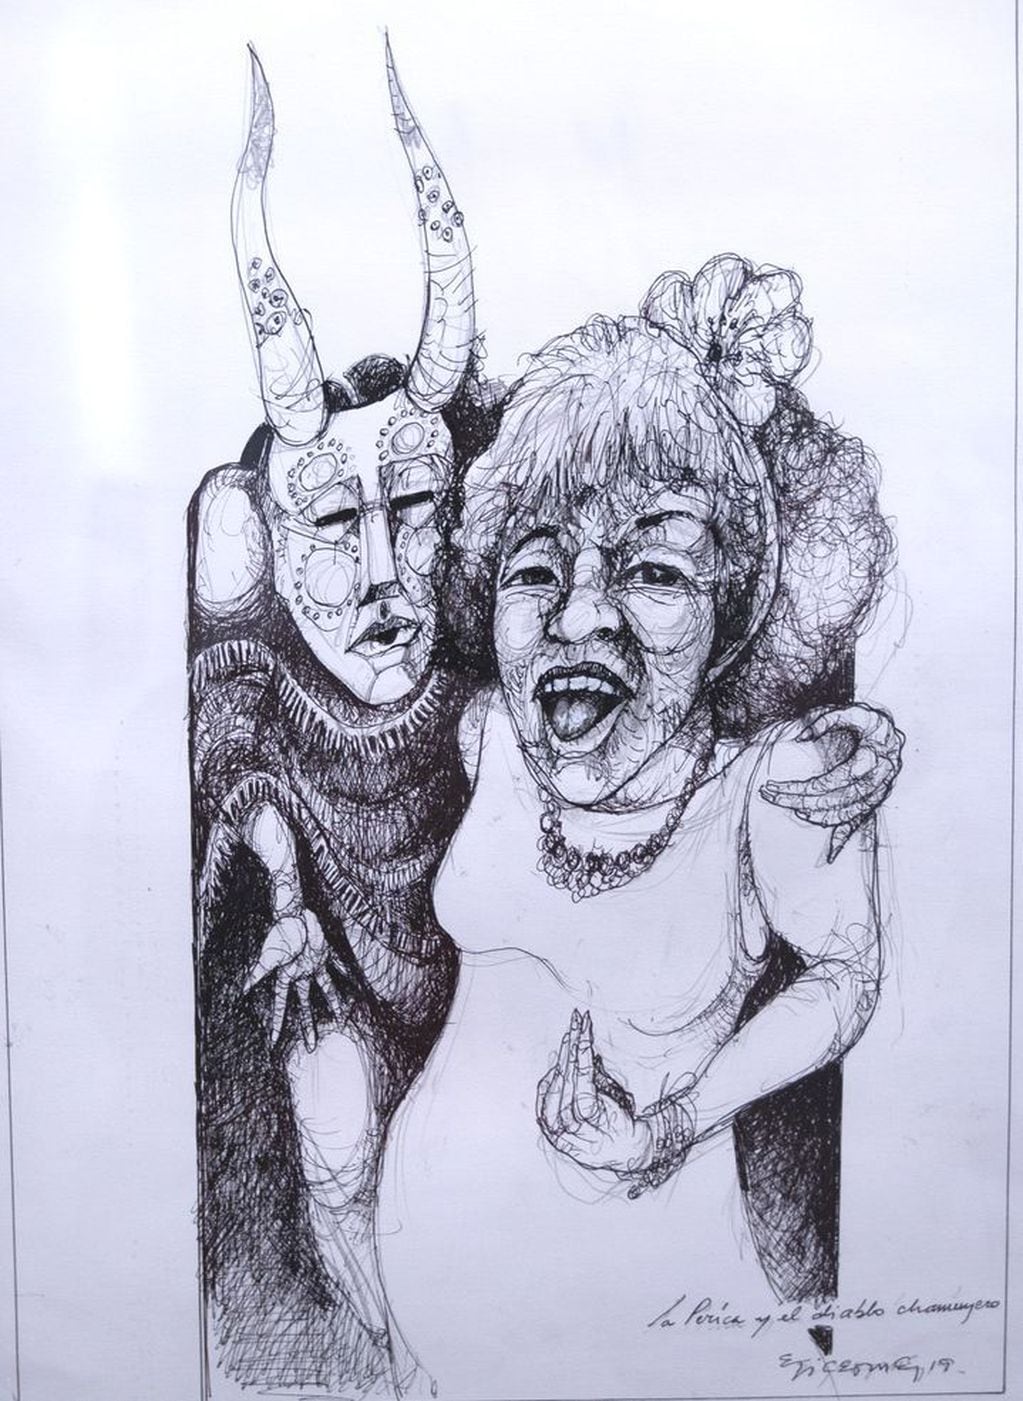 La “Perica” (una amiga de Elicetche) y el diablito chamuyero.